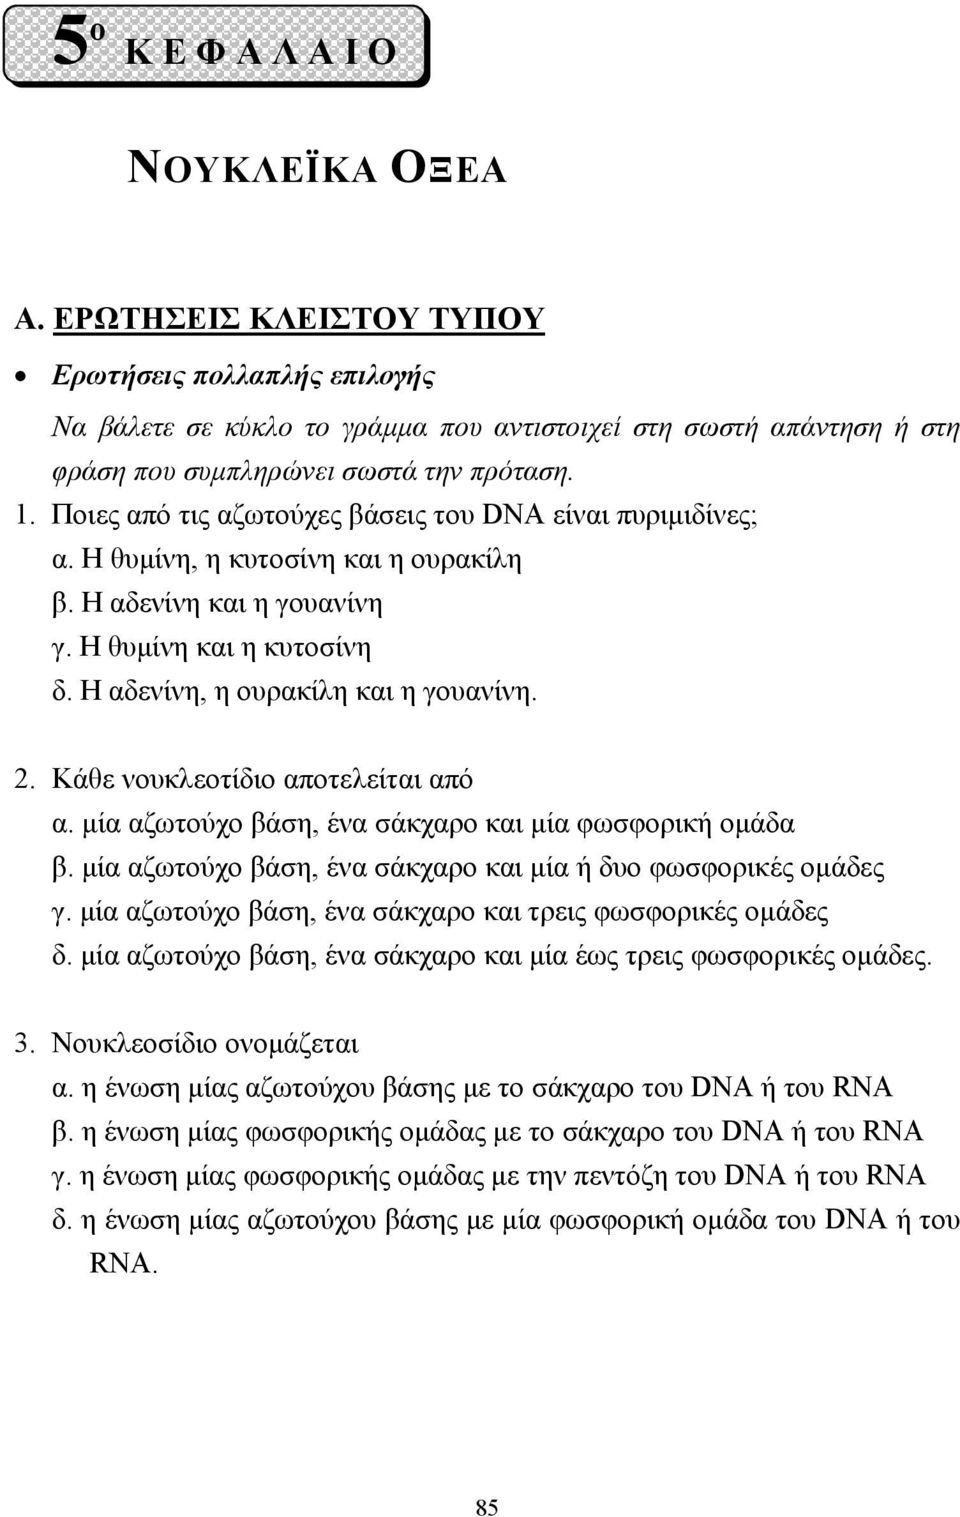 Ποιες από τις αζωτούχες βάσεις του DNA είναι πυριµιδίνες; α. Η θυµίνη, η κυτοσίνη και η ουρακίλη β. Η αδενίνη και η γουανίνη γ. Η θυµίνη και η κυτοσίνη δ. Η αδενίνη, η ουρακίλη και η γουανίνη. 2.